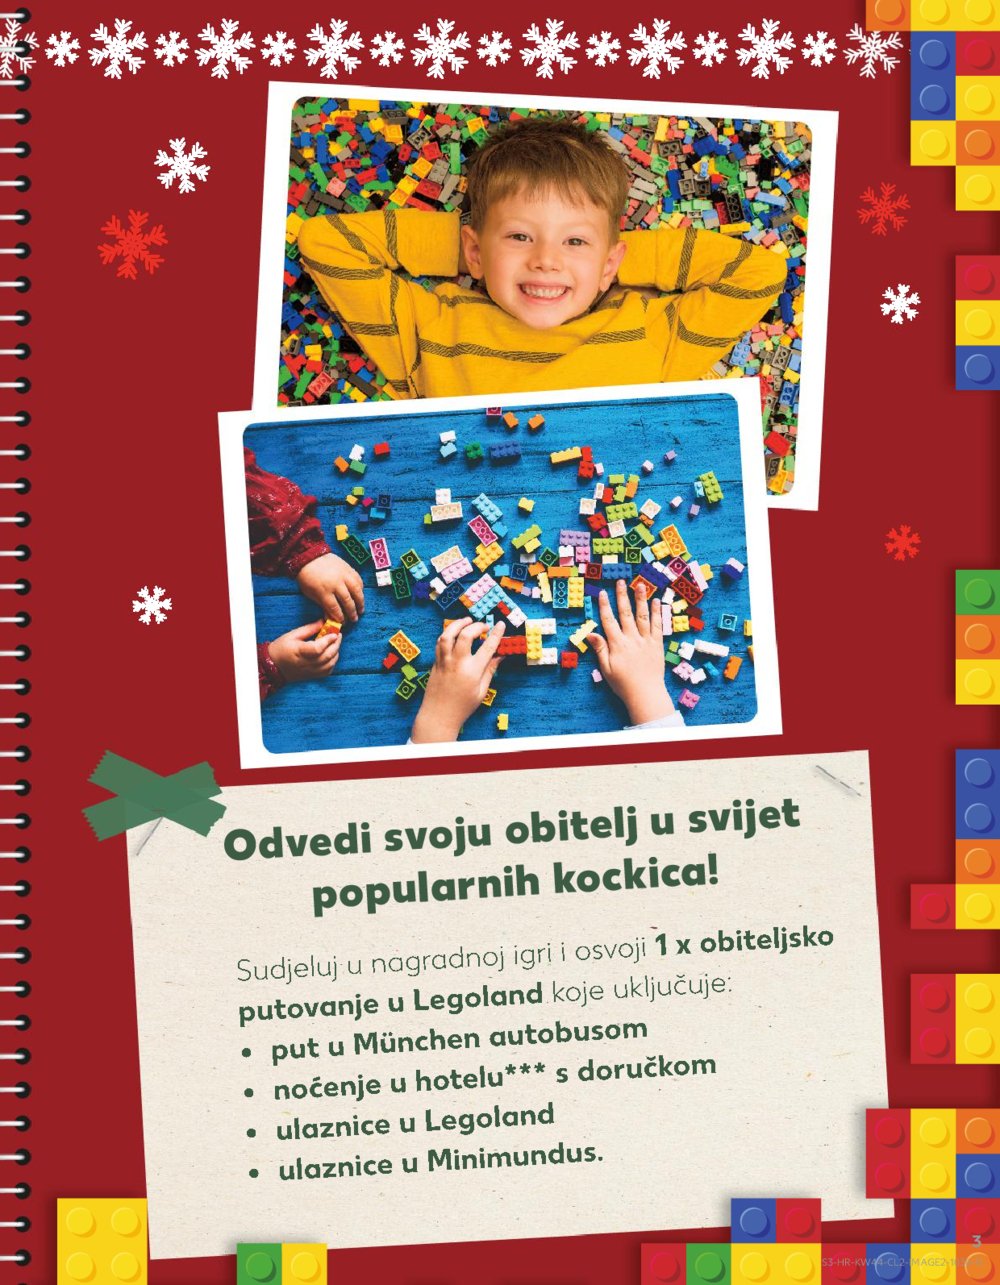 Kaufland katalog igračaka 02.11.-24.12.2022.